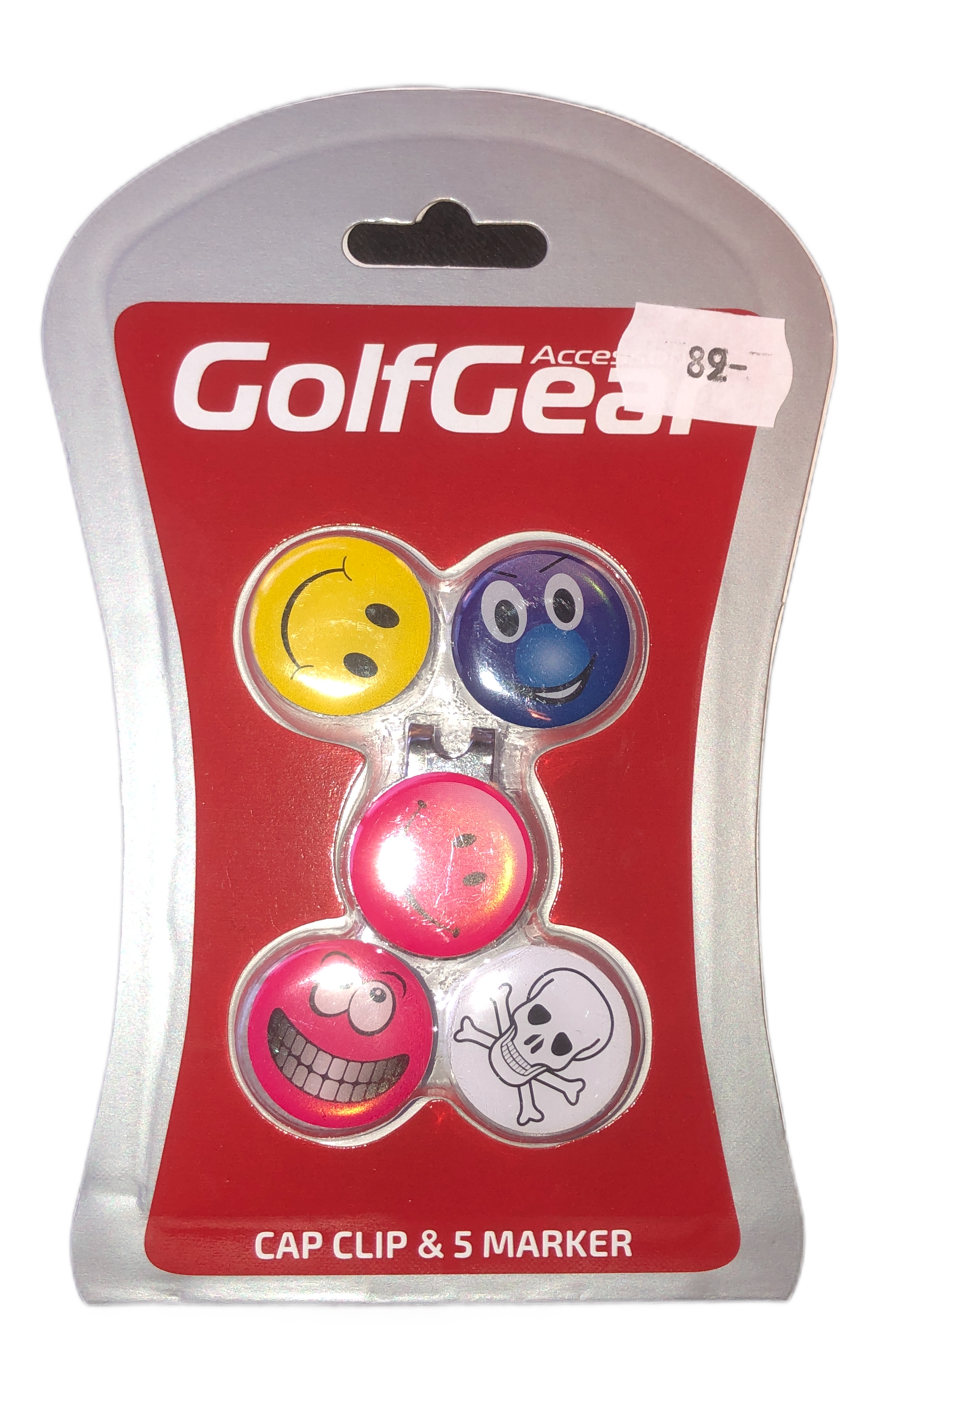 Golf Gear Cap Clip & 5 Marker